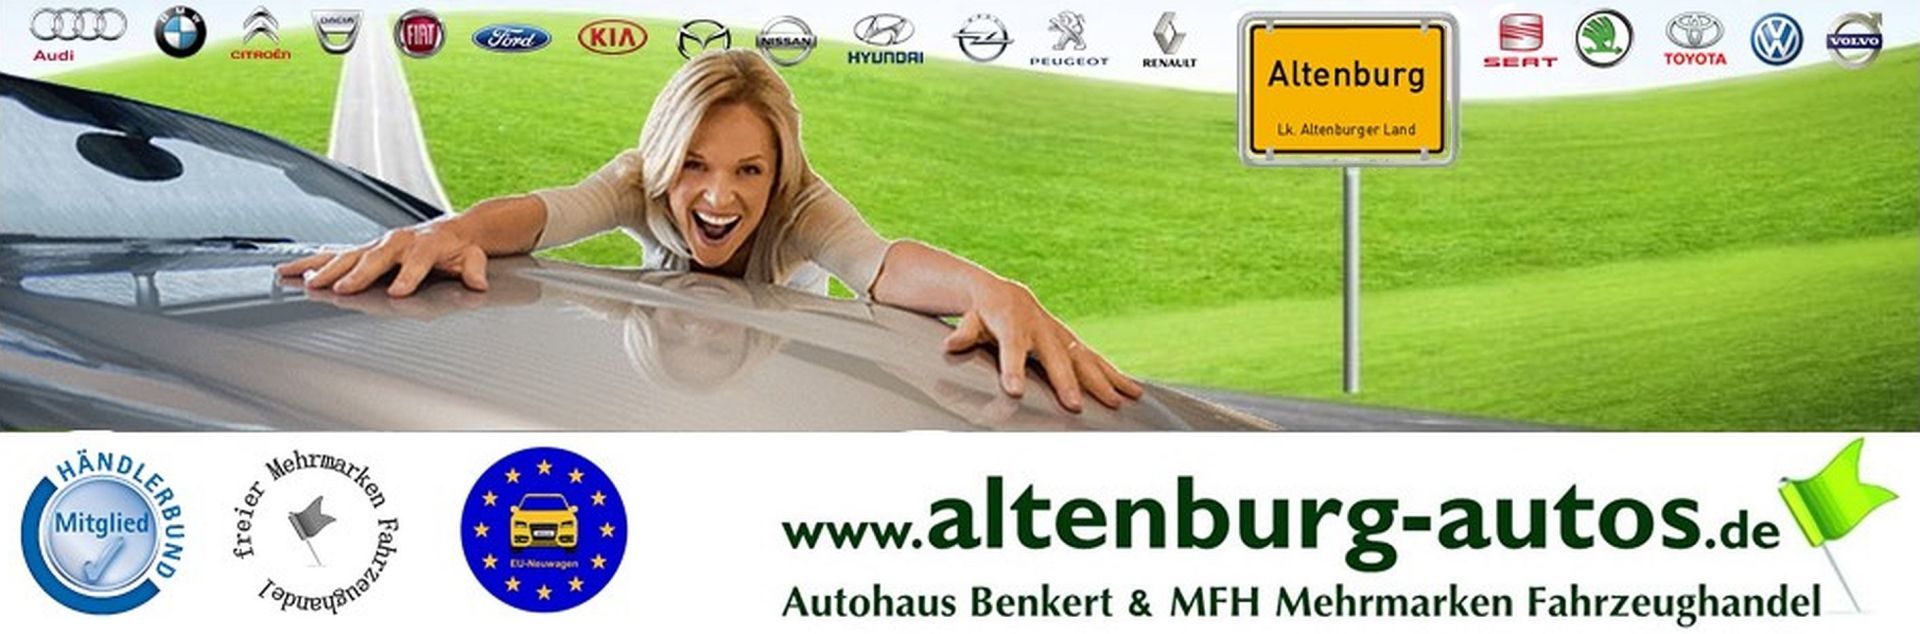 Altenburg-Autos, EU-Fahrzeuge von MFH und Autohaus Benkert